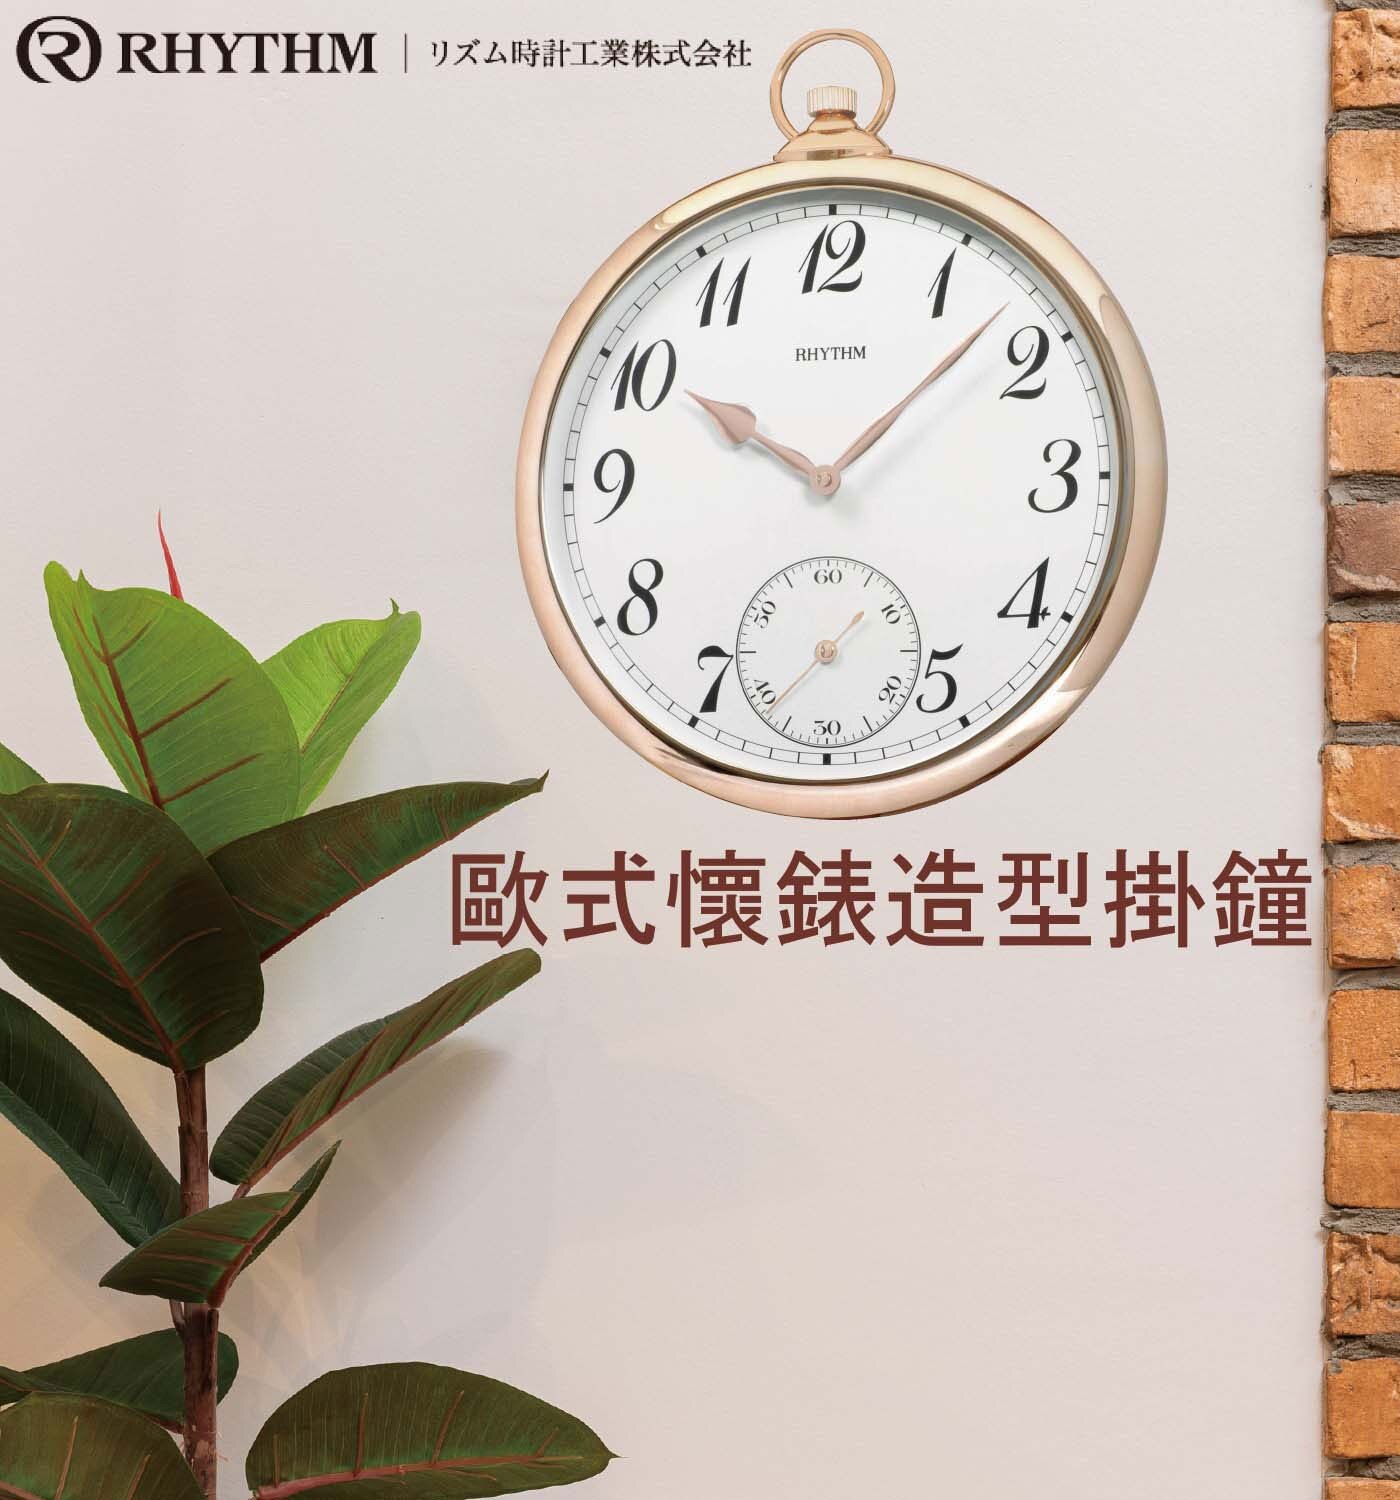 麗聲鐘懷錶造型掛鐘 CMG752誠如麗聲鐘的口號精確計時神乎其技唯有麗聲